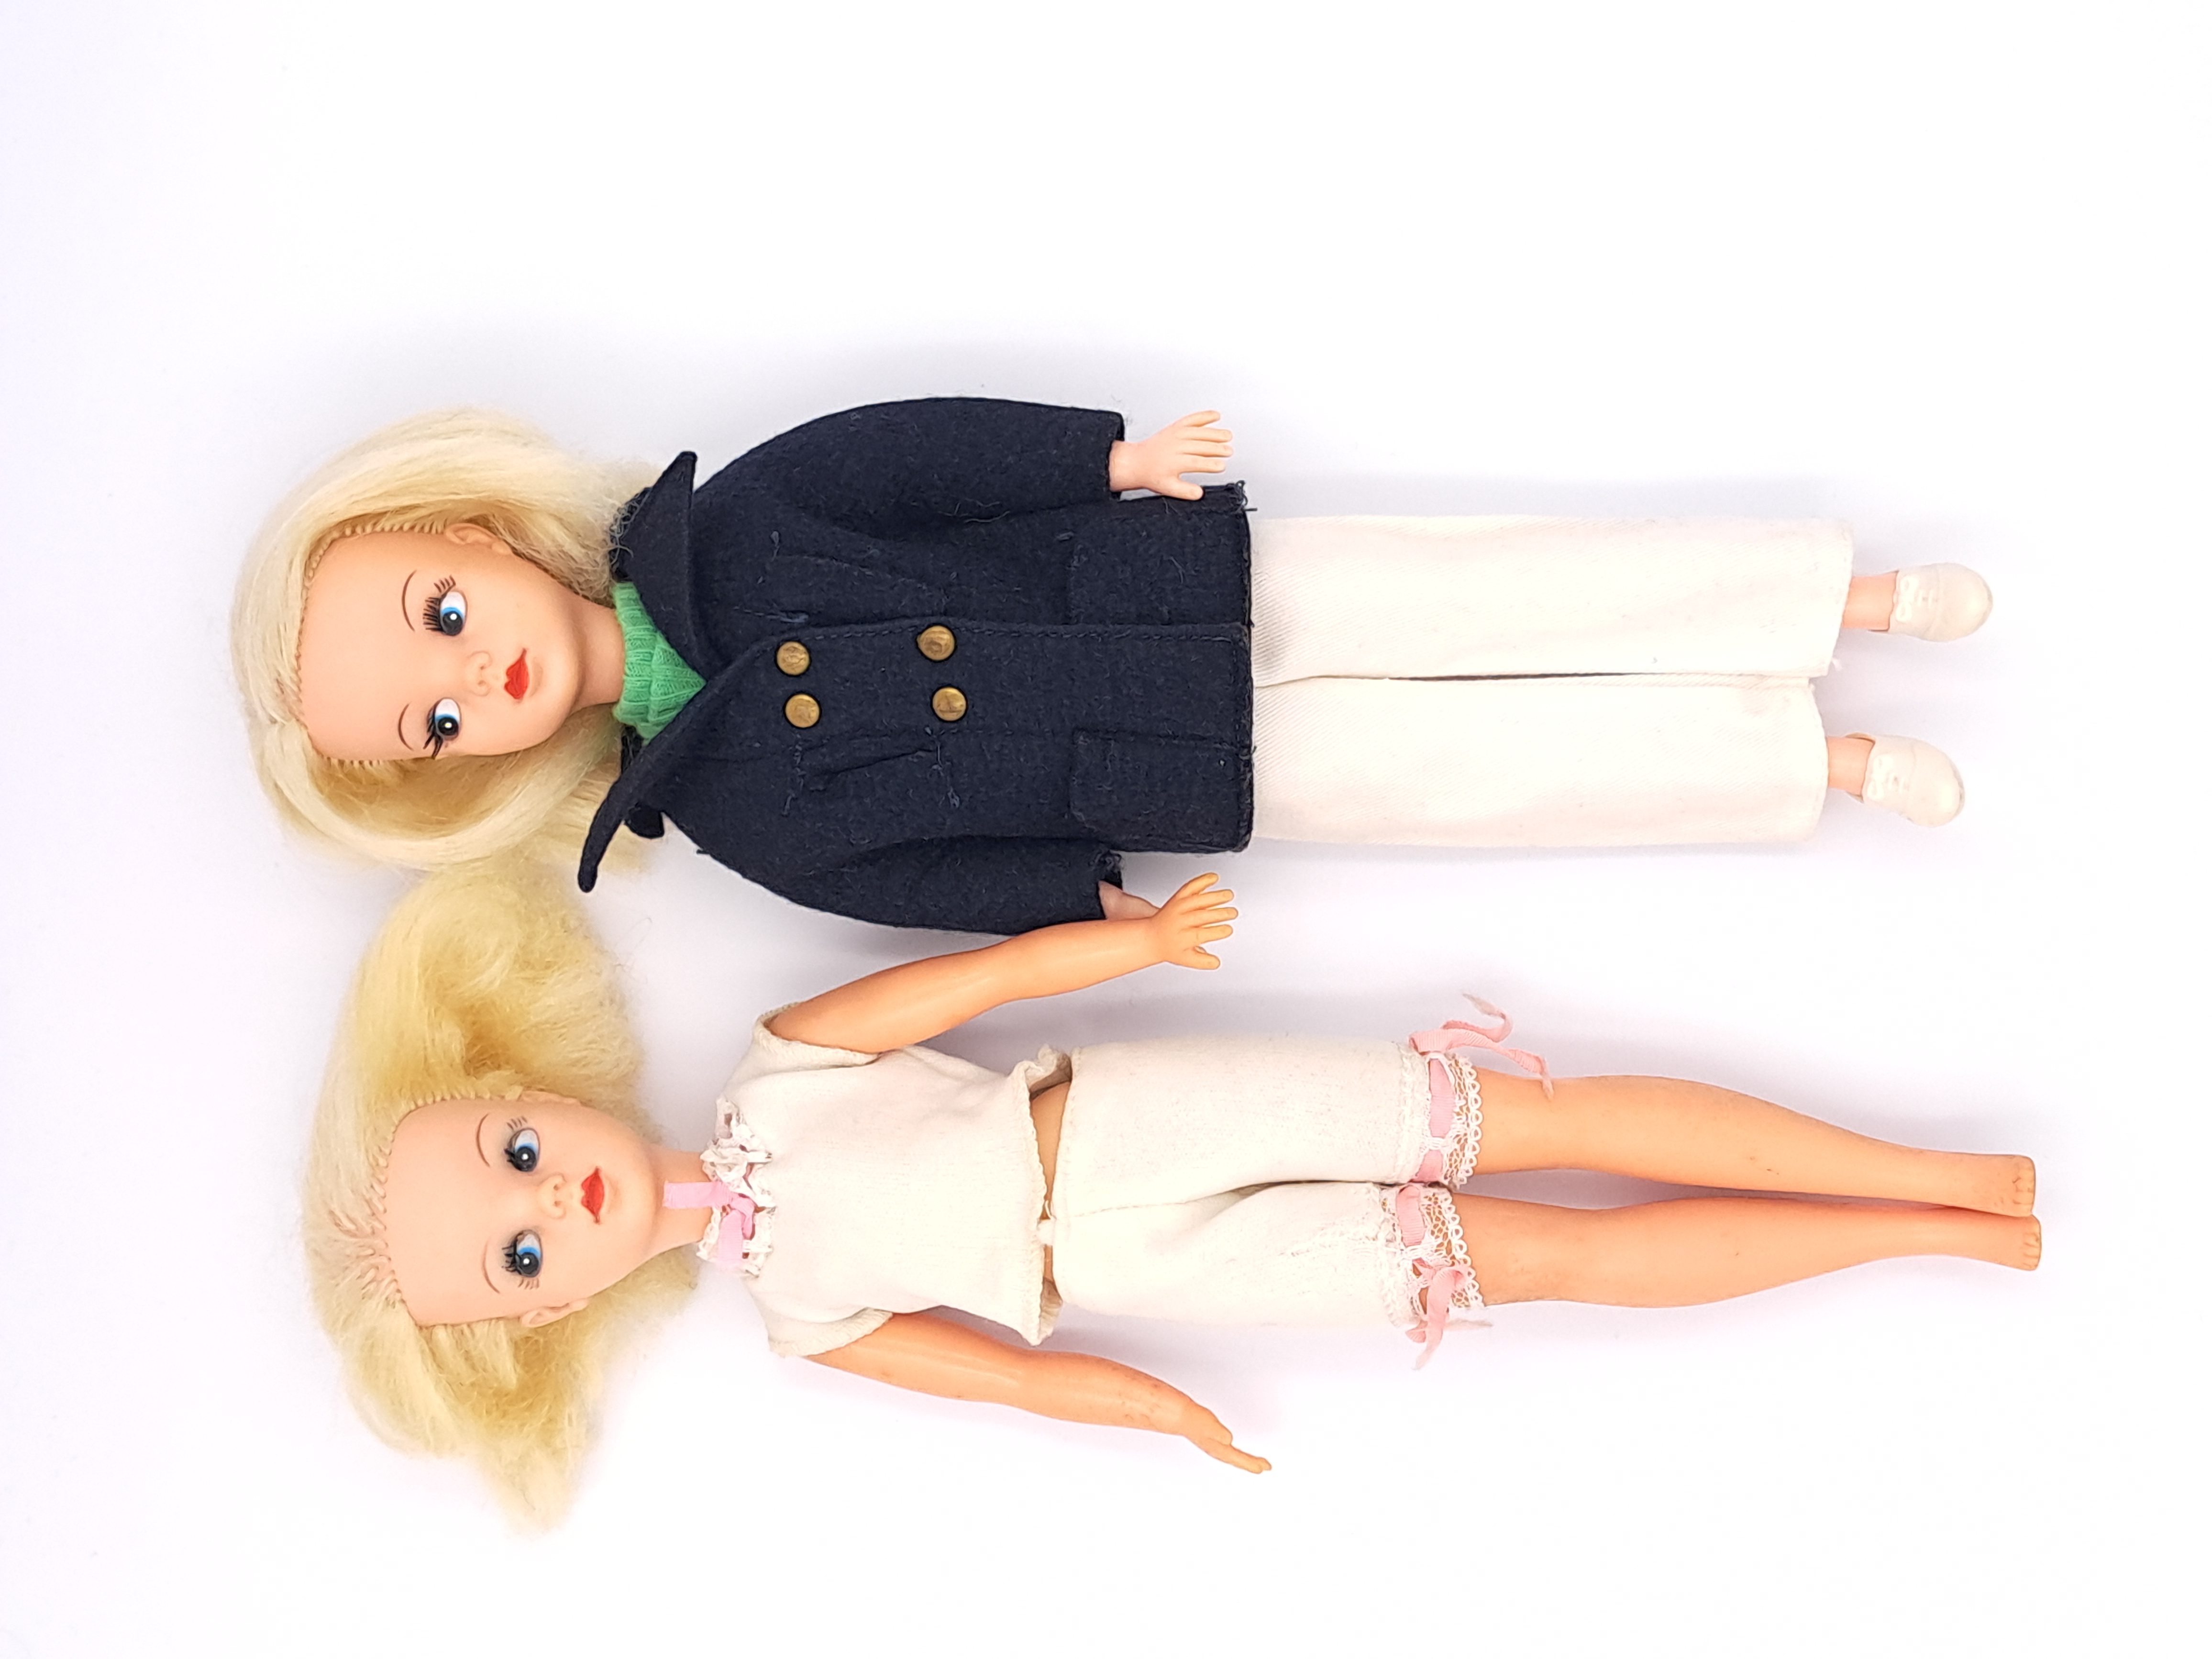 Pedigree Sindy pair of vintage side part hair dolls, 1969, blonde